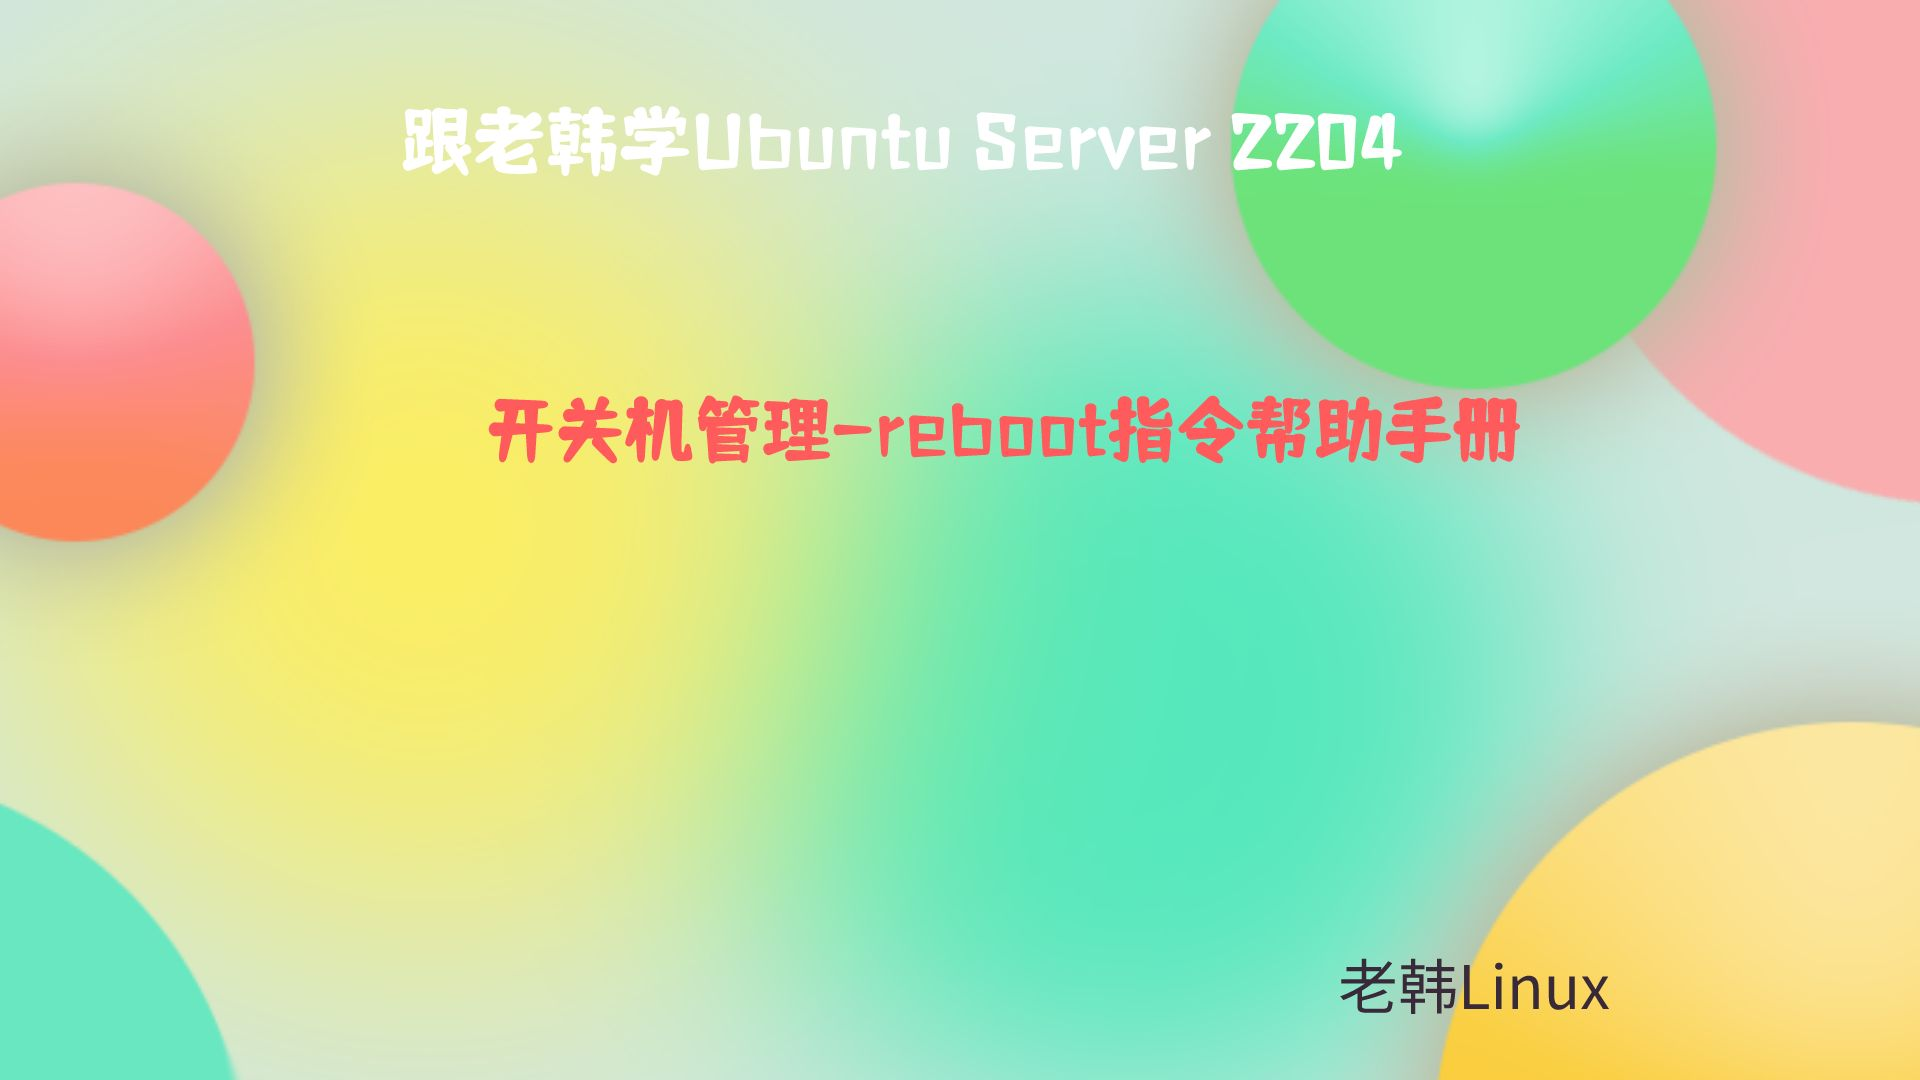 跟老韩学Ubuntu Server 2204-开关机-reboot指令帮助手册